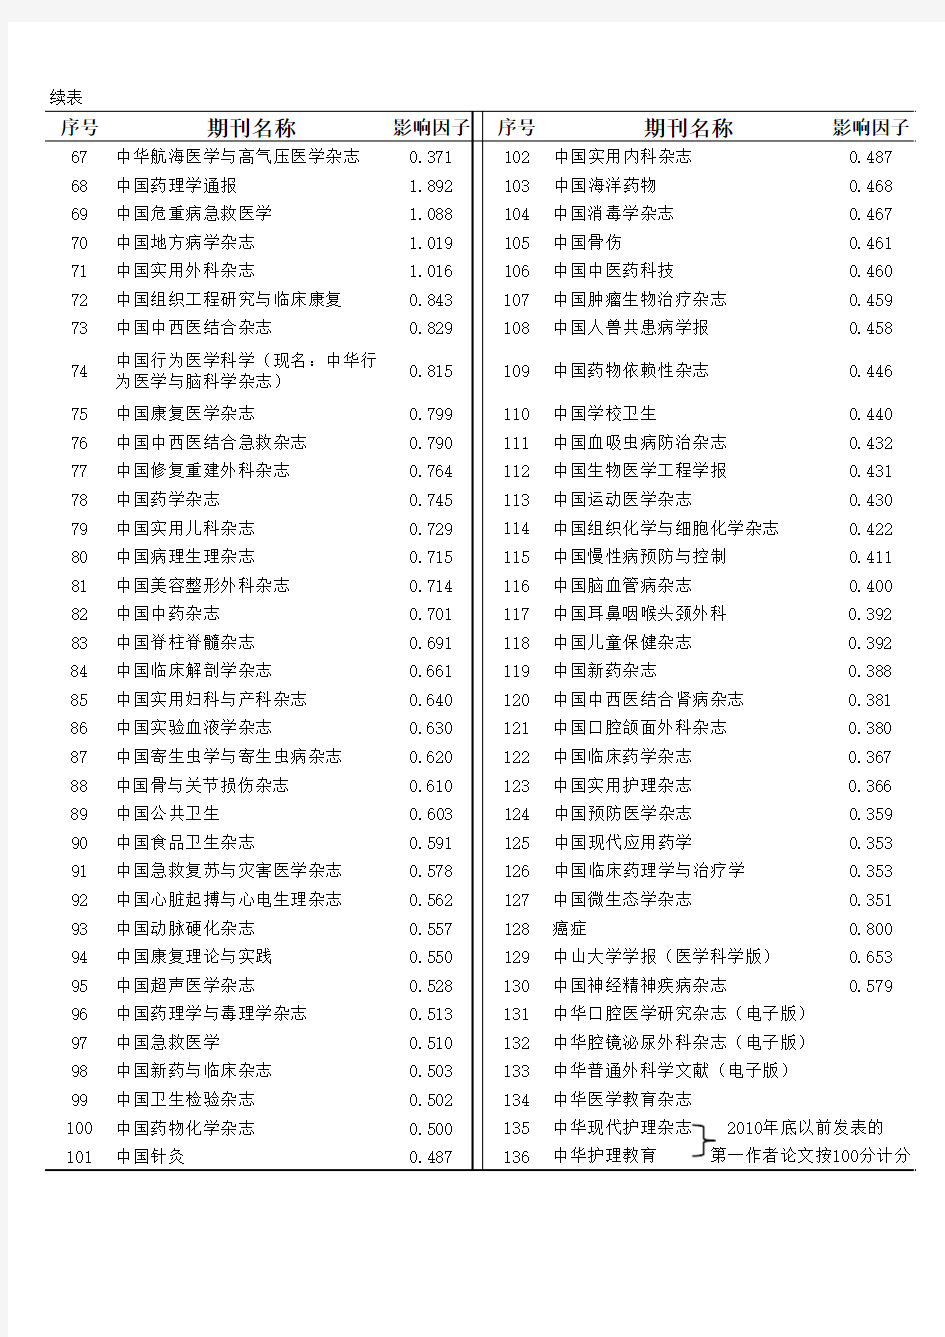 全国一级学会、中国医师协会主办影响因子0.35以上